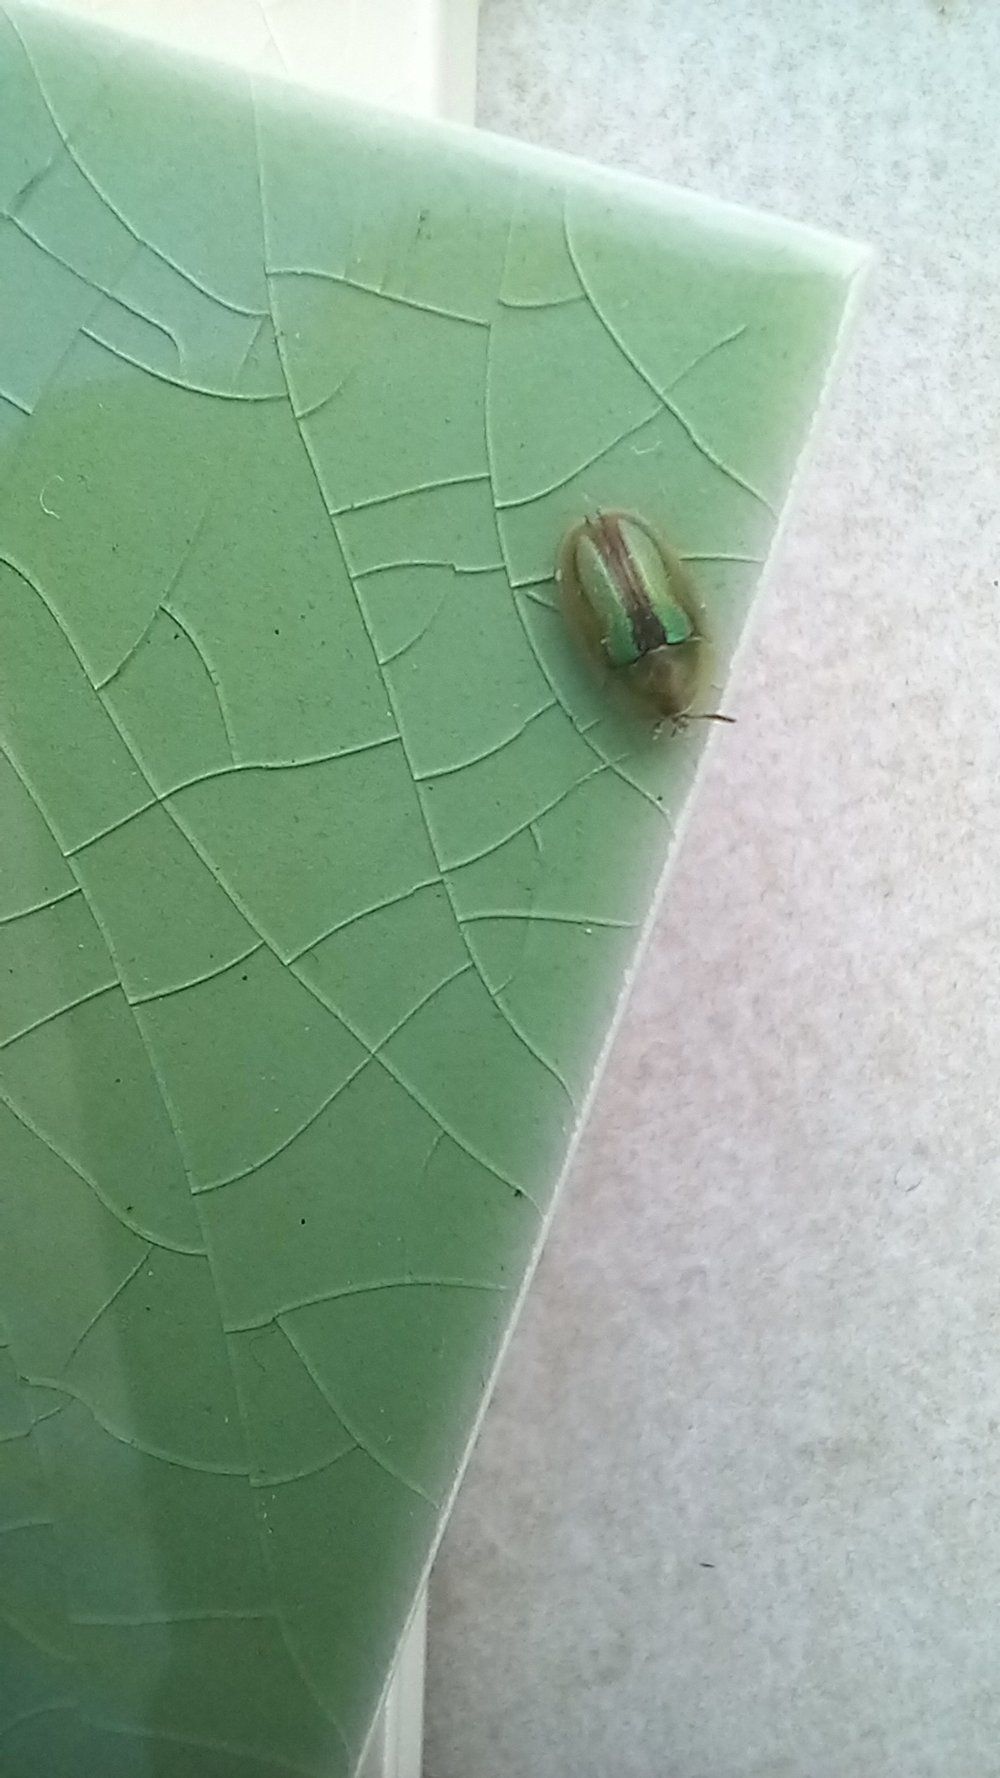  Grüner Käfer auf grüner Fliese :) 